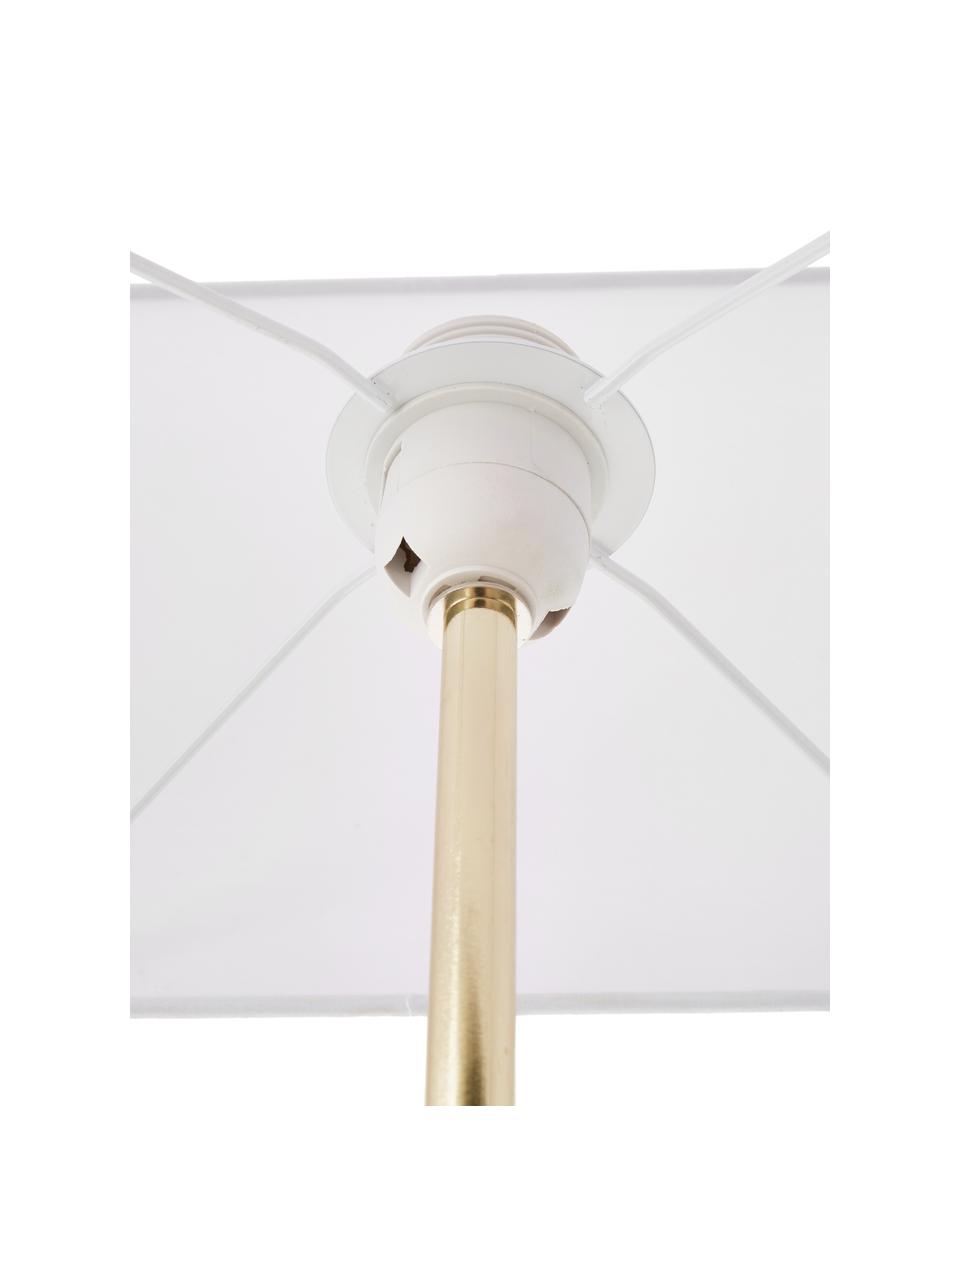 Grande lampe à poser design Treasure, Transparent, couleur dorée, agate beige Abat-jour : blanc, larg. 33 x haut. 62 cm